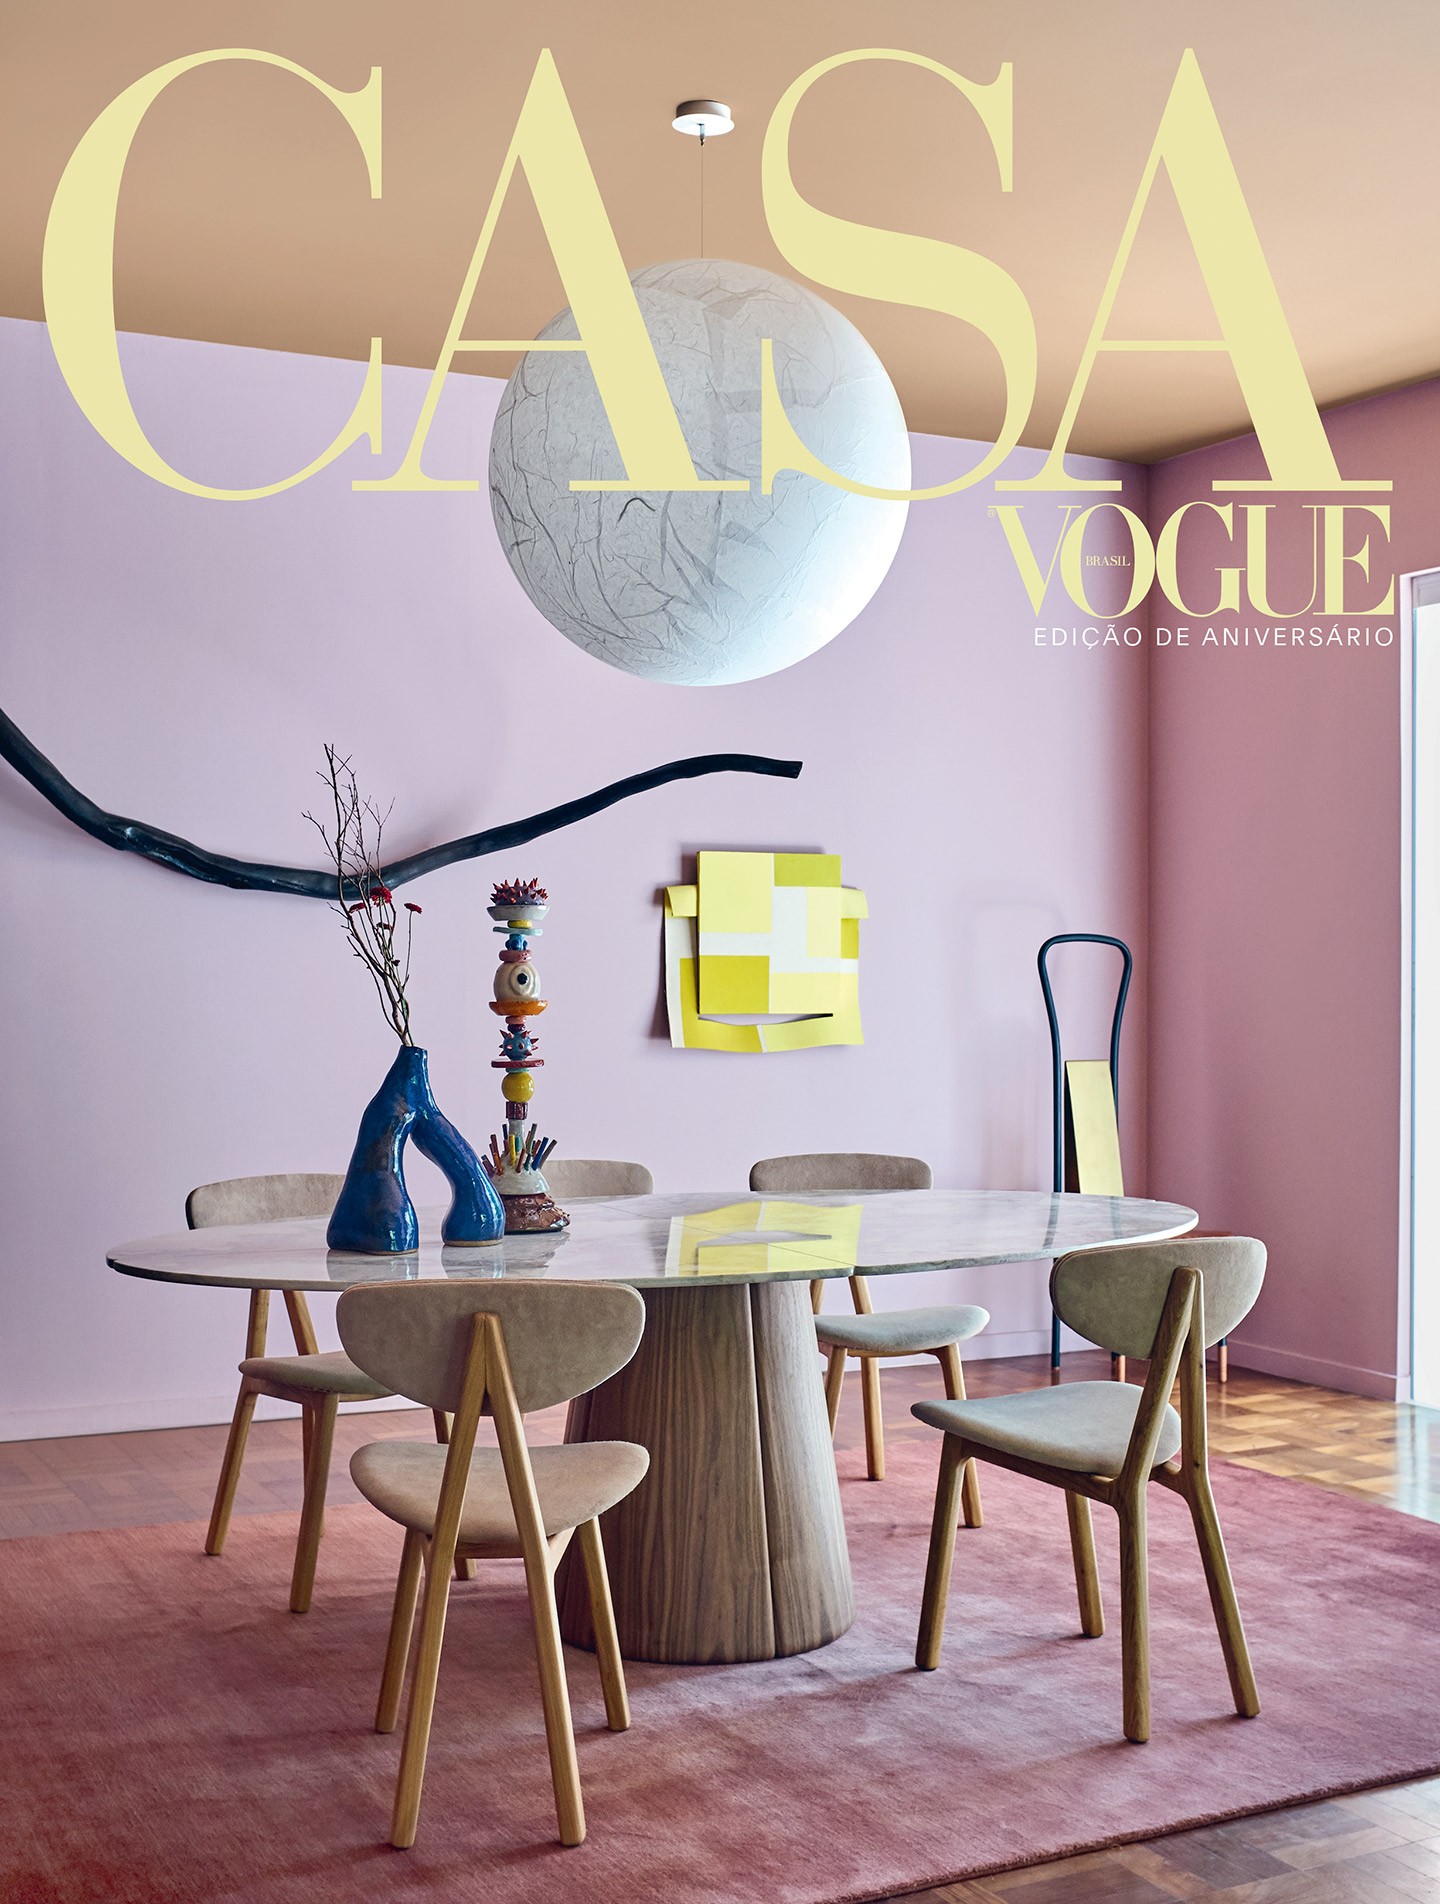 Casa Vogue comemora 45 anos com edição especial de capa dupla (Foto: Ilana Bessler/Habitado)